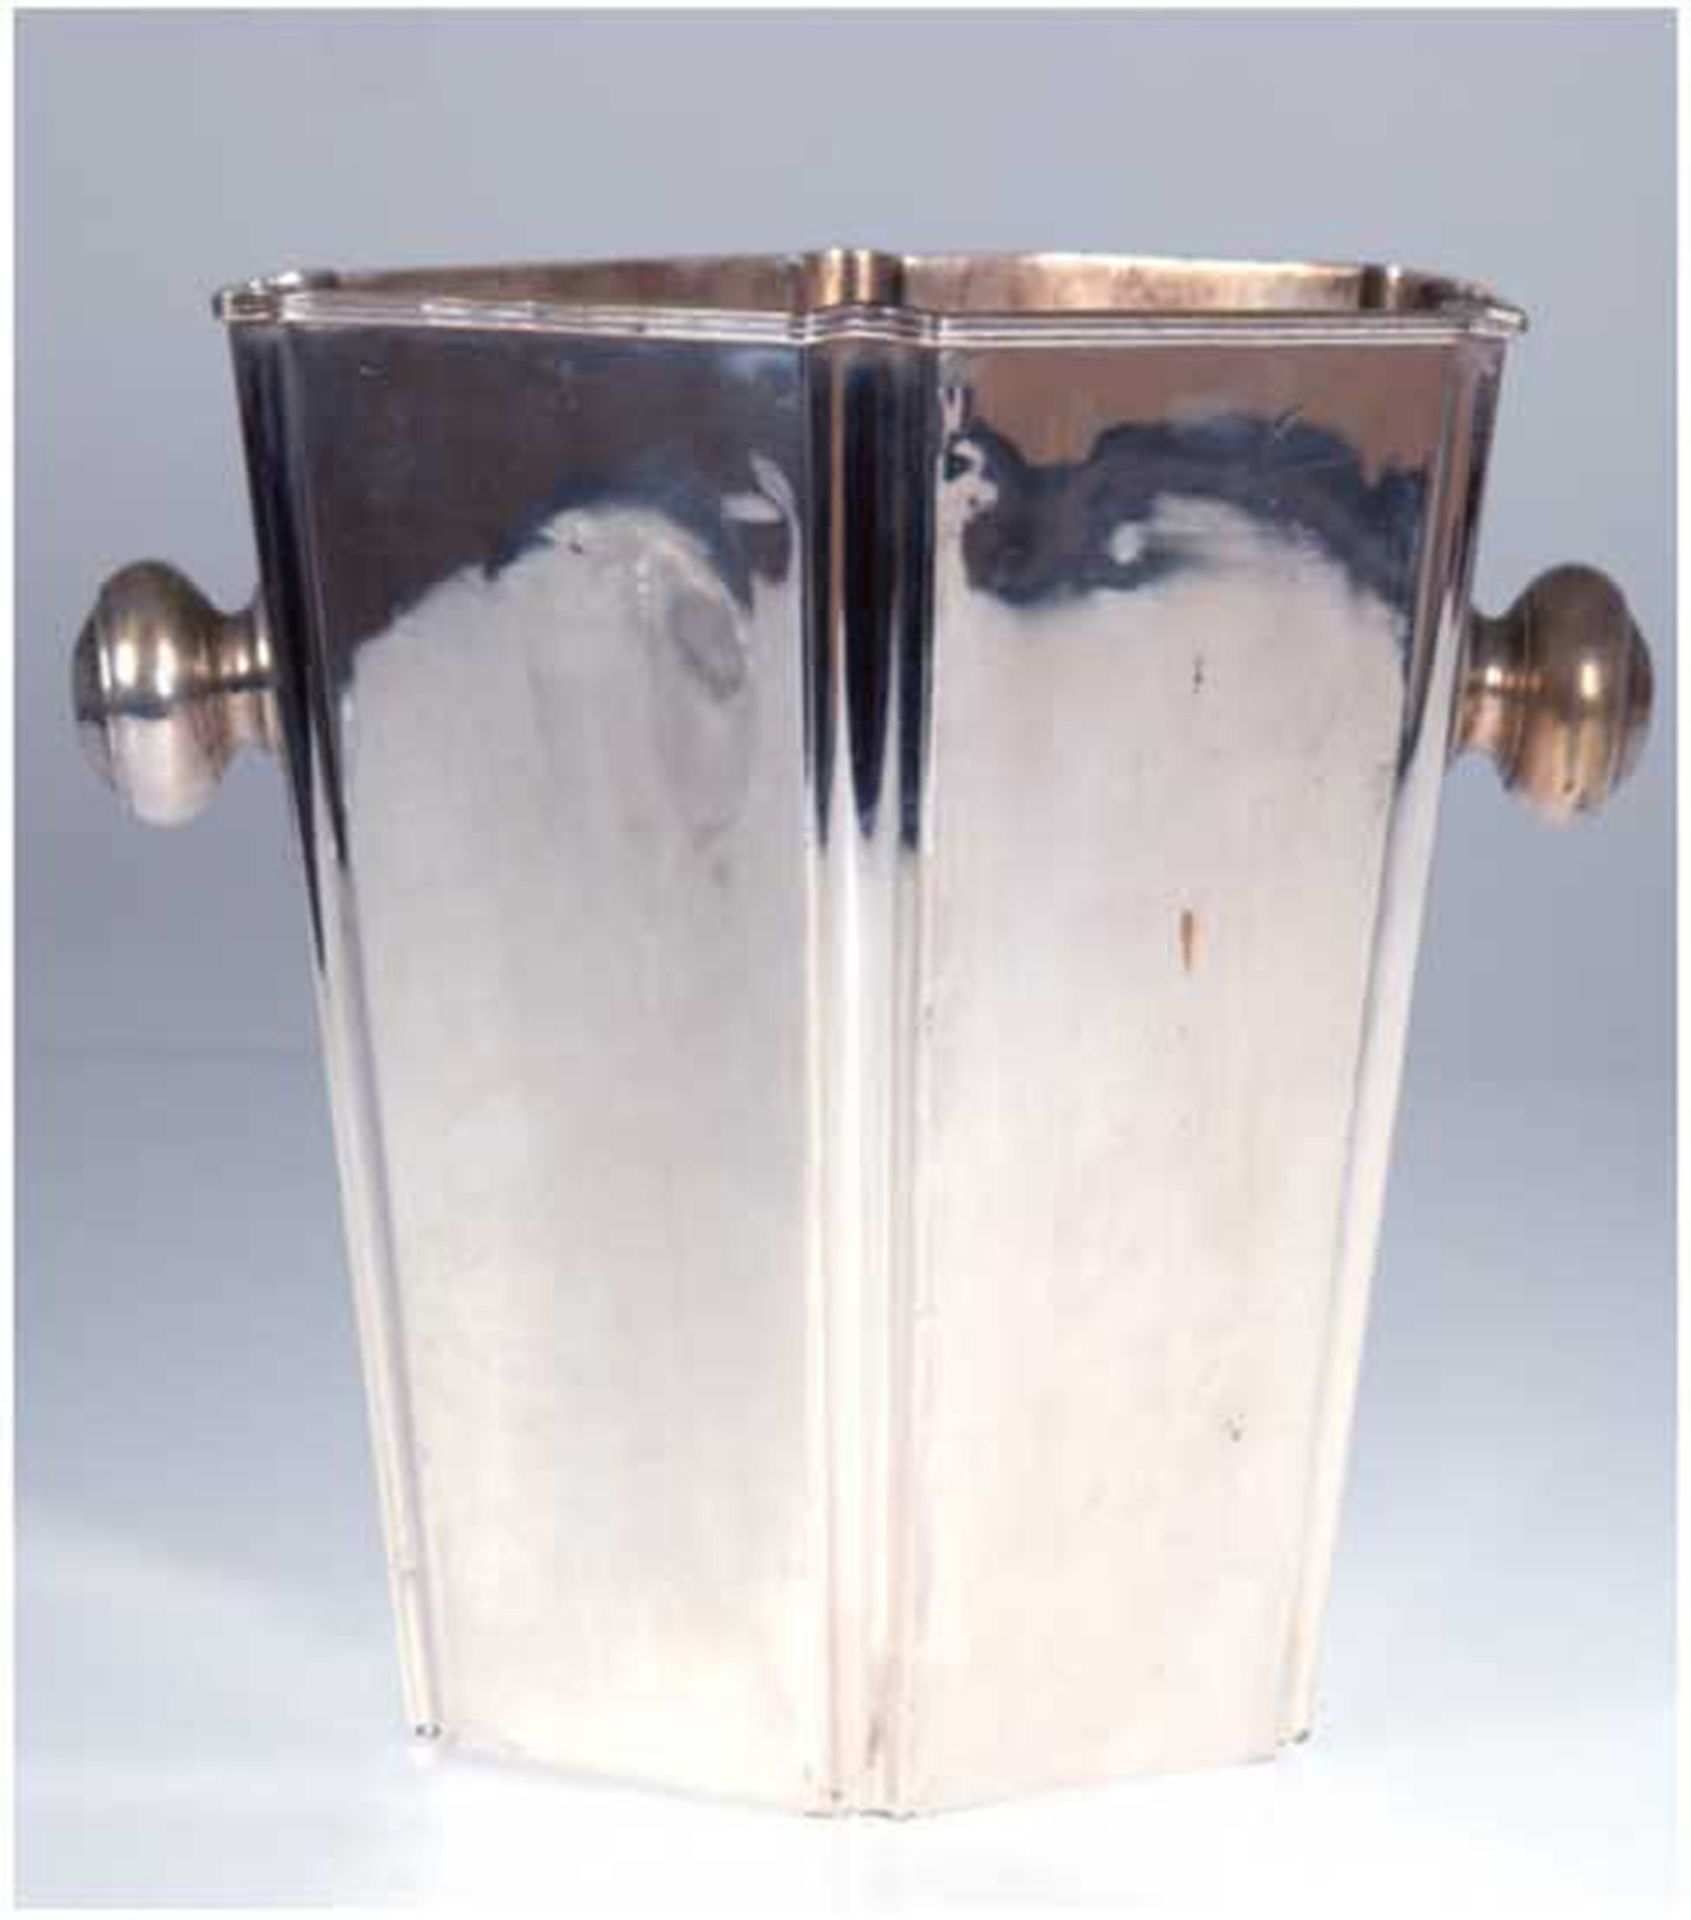 Sekt-/Weinkühler, versilbert, 6-kantige, konische Form mit beidseitigen Handhaben, H. 26 cm